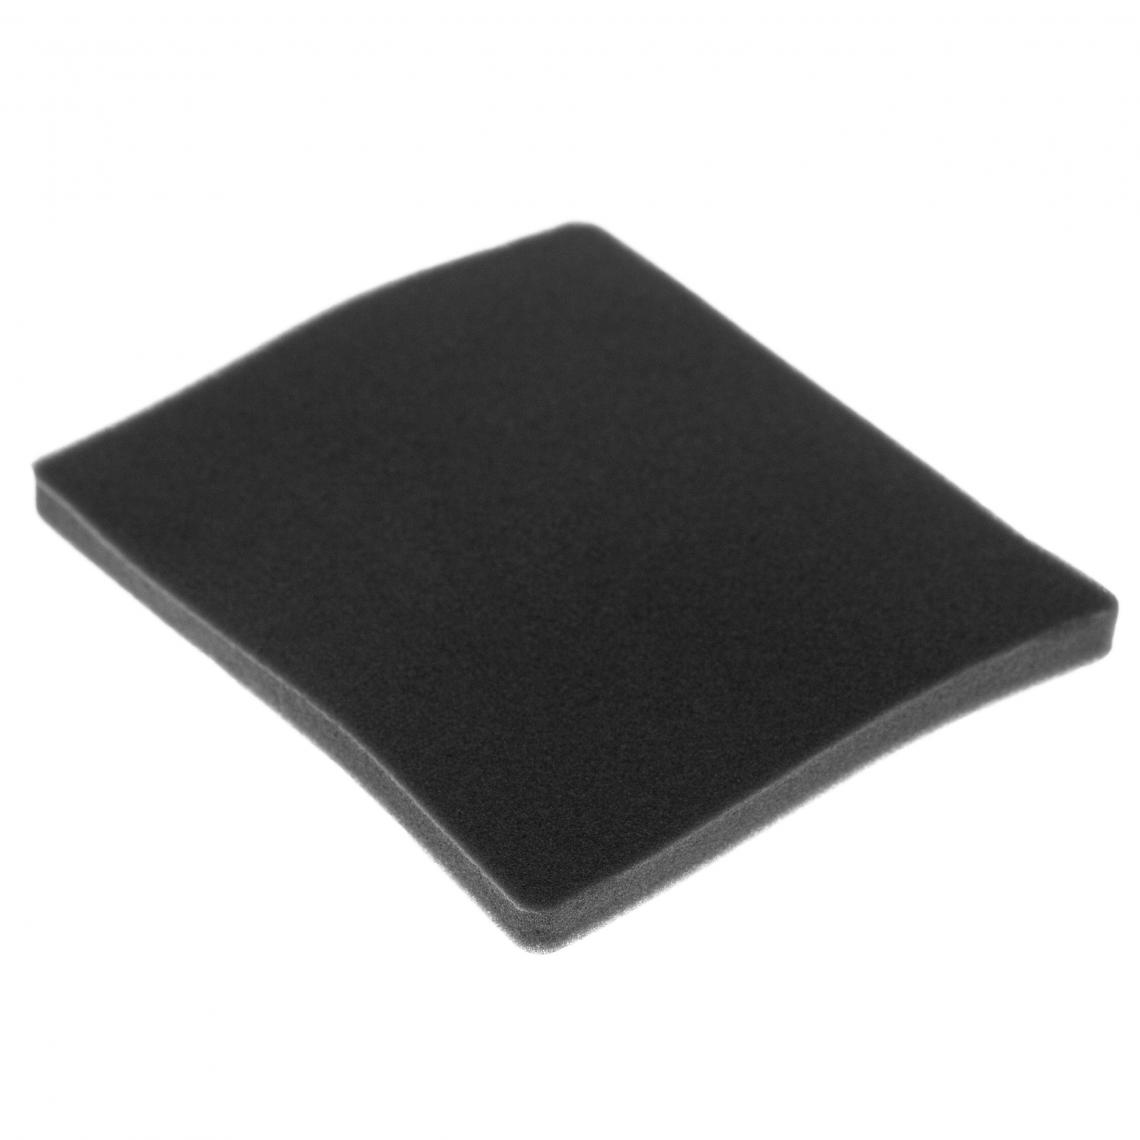 Vhbw - vhbw Filtre compatible avec Electrolux AJM68FD1 (903151702) aspirateur - filtre de sortie d'air (filtre éponge), noir - Accessoire entretien des sols